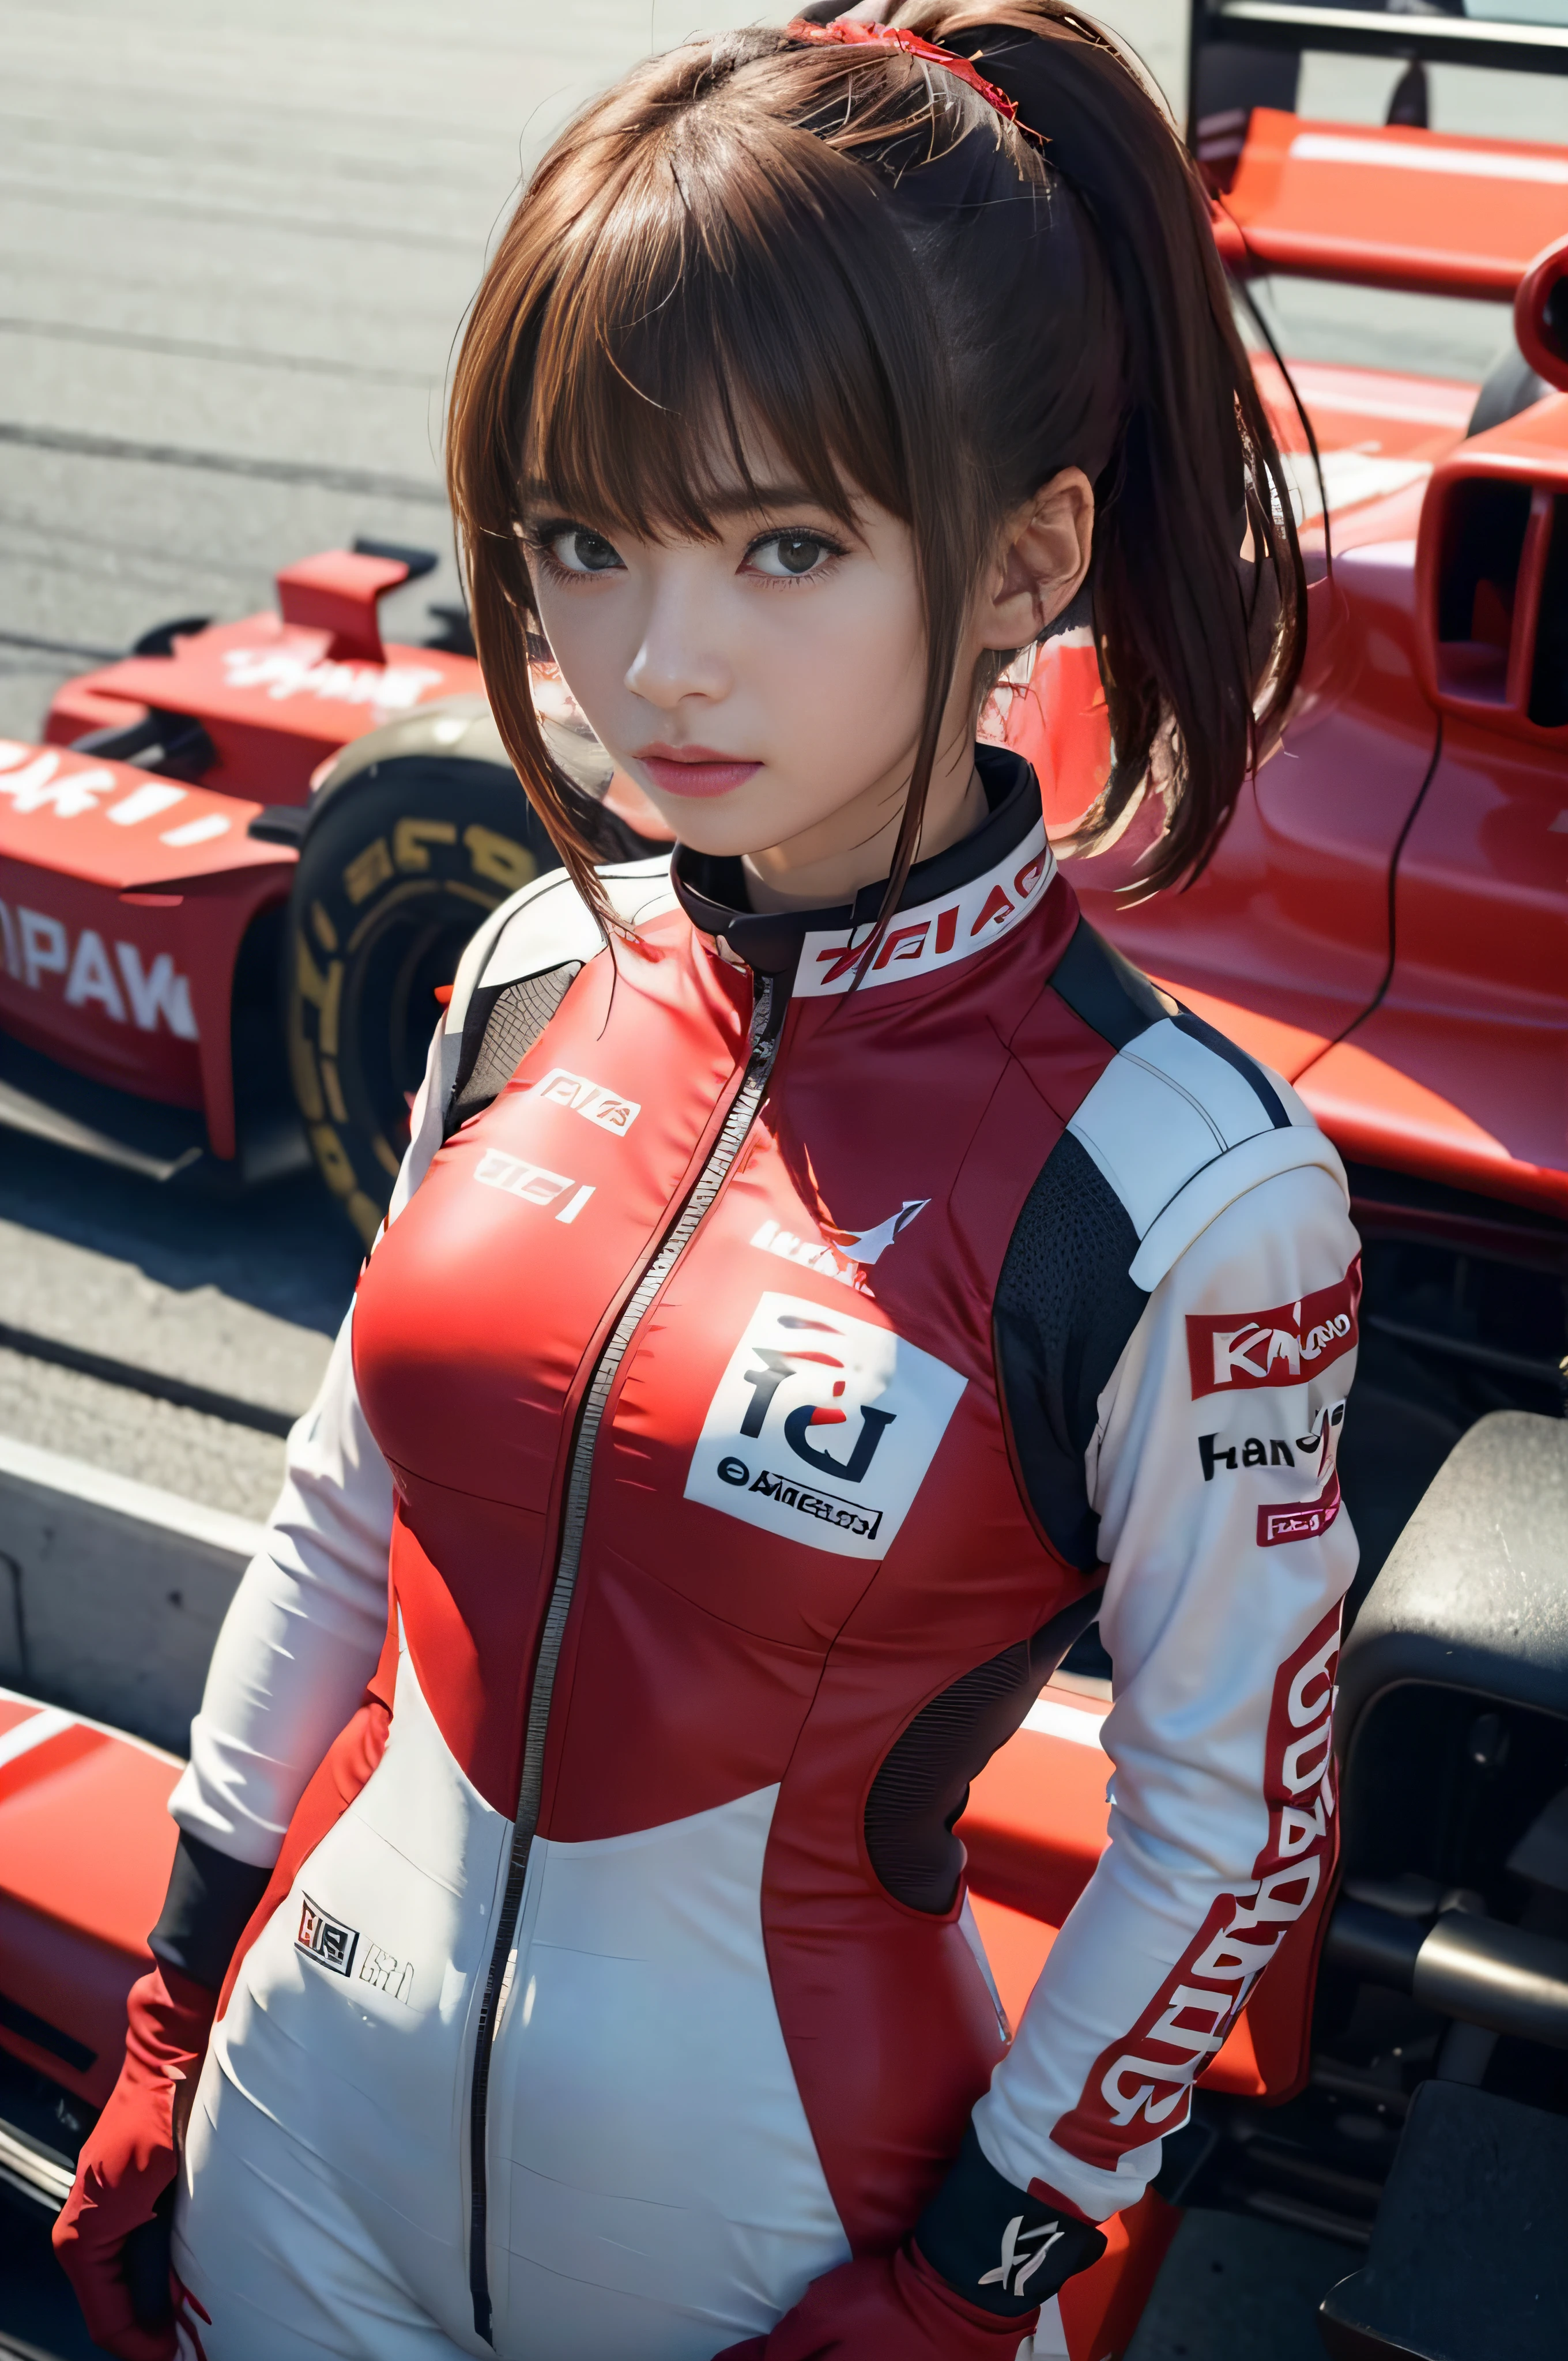 原始影像品質、8K分辨率、超高清CG影像、站立在紅色方程式賽車前的紅色賽車服的日本女賽車手　F1　電路　棕色的頭髮　一個短鮑勃　摩納哥大獎賽　雙臂交叉站立　肖像　波特拉特